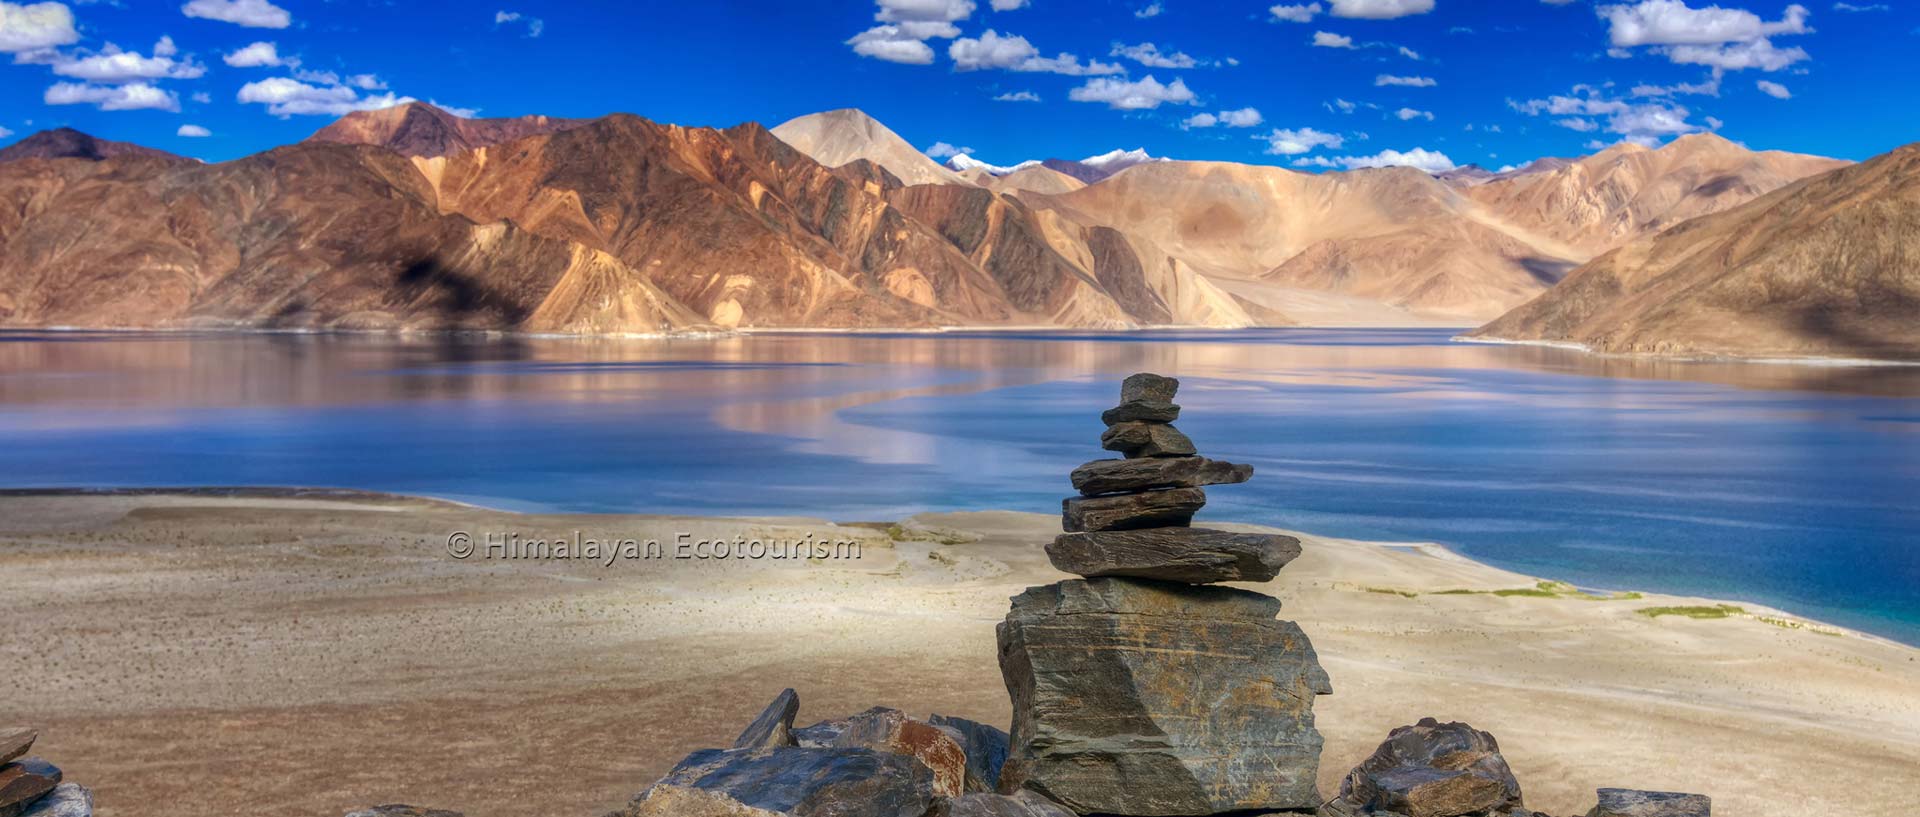 Spiritual Tour in Ladakh - Himalayan Ecotourism